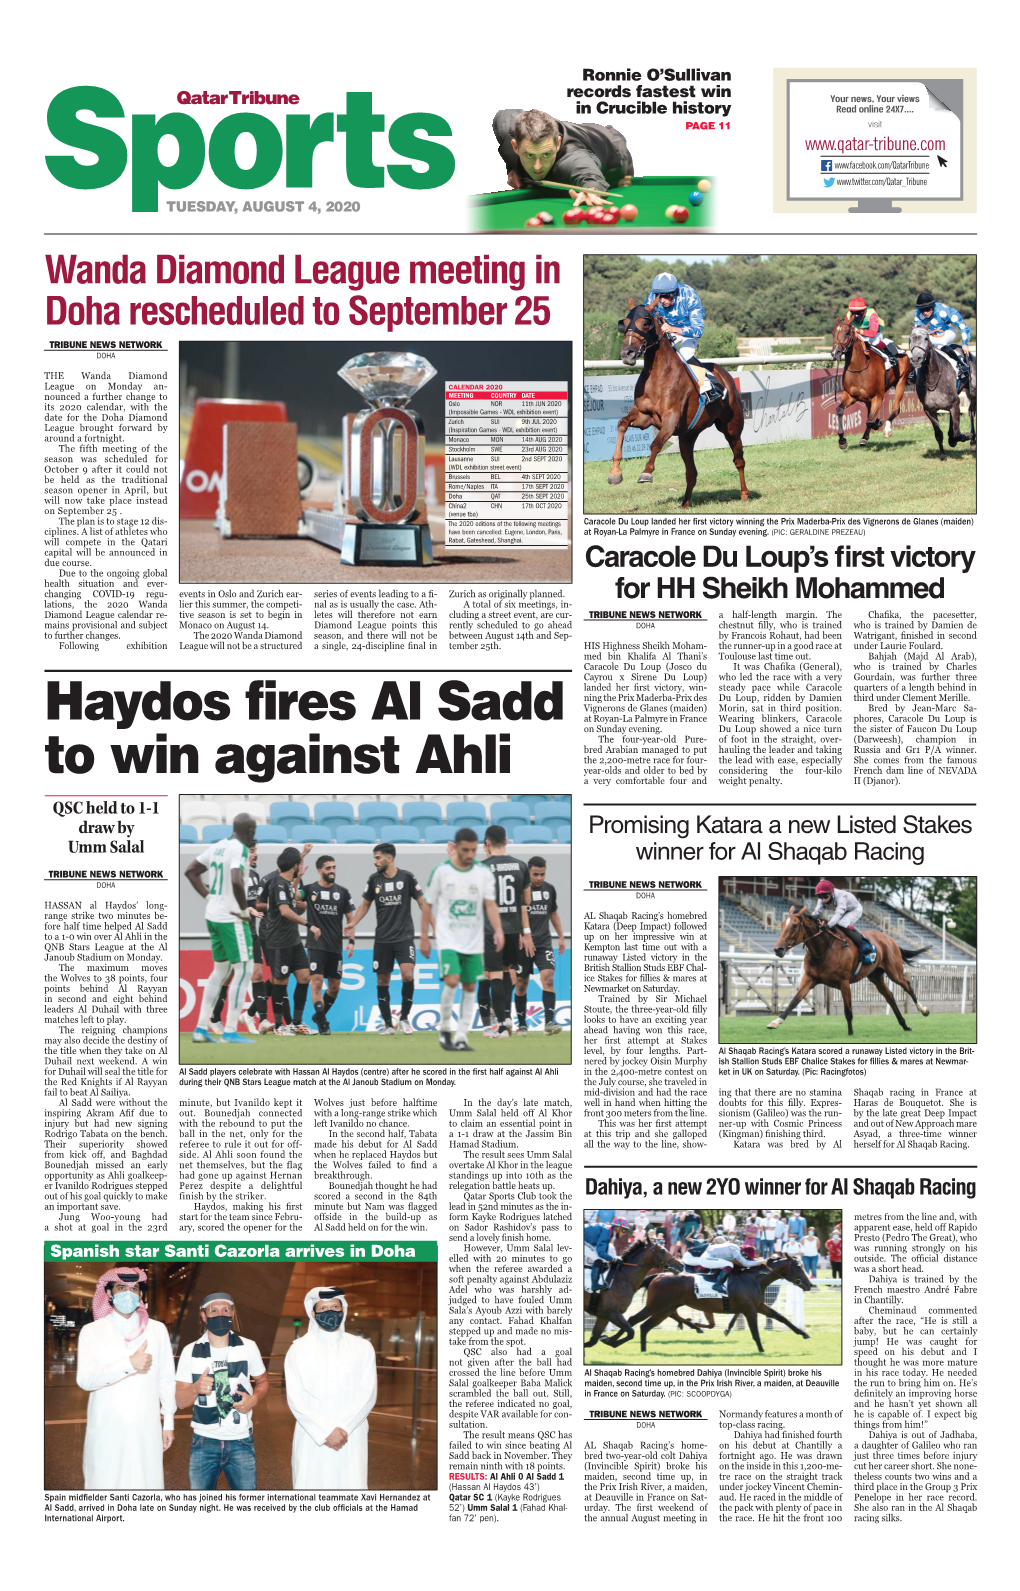 Haydos Fires Al Sadd to Win Against Ahli